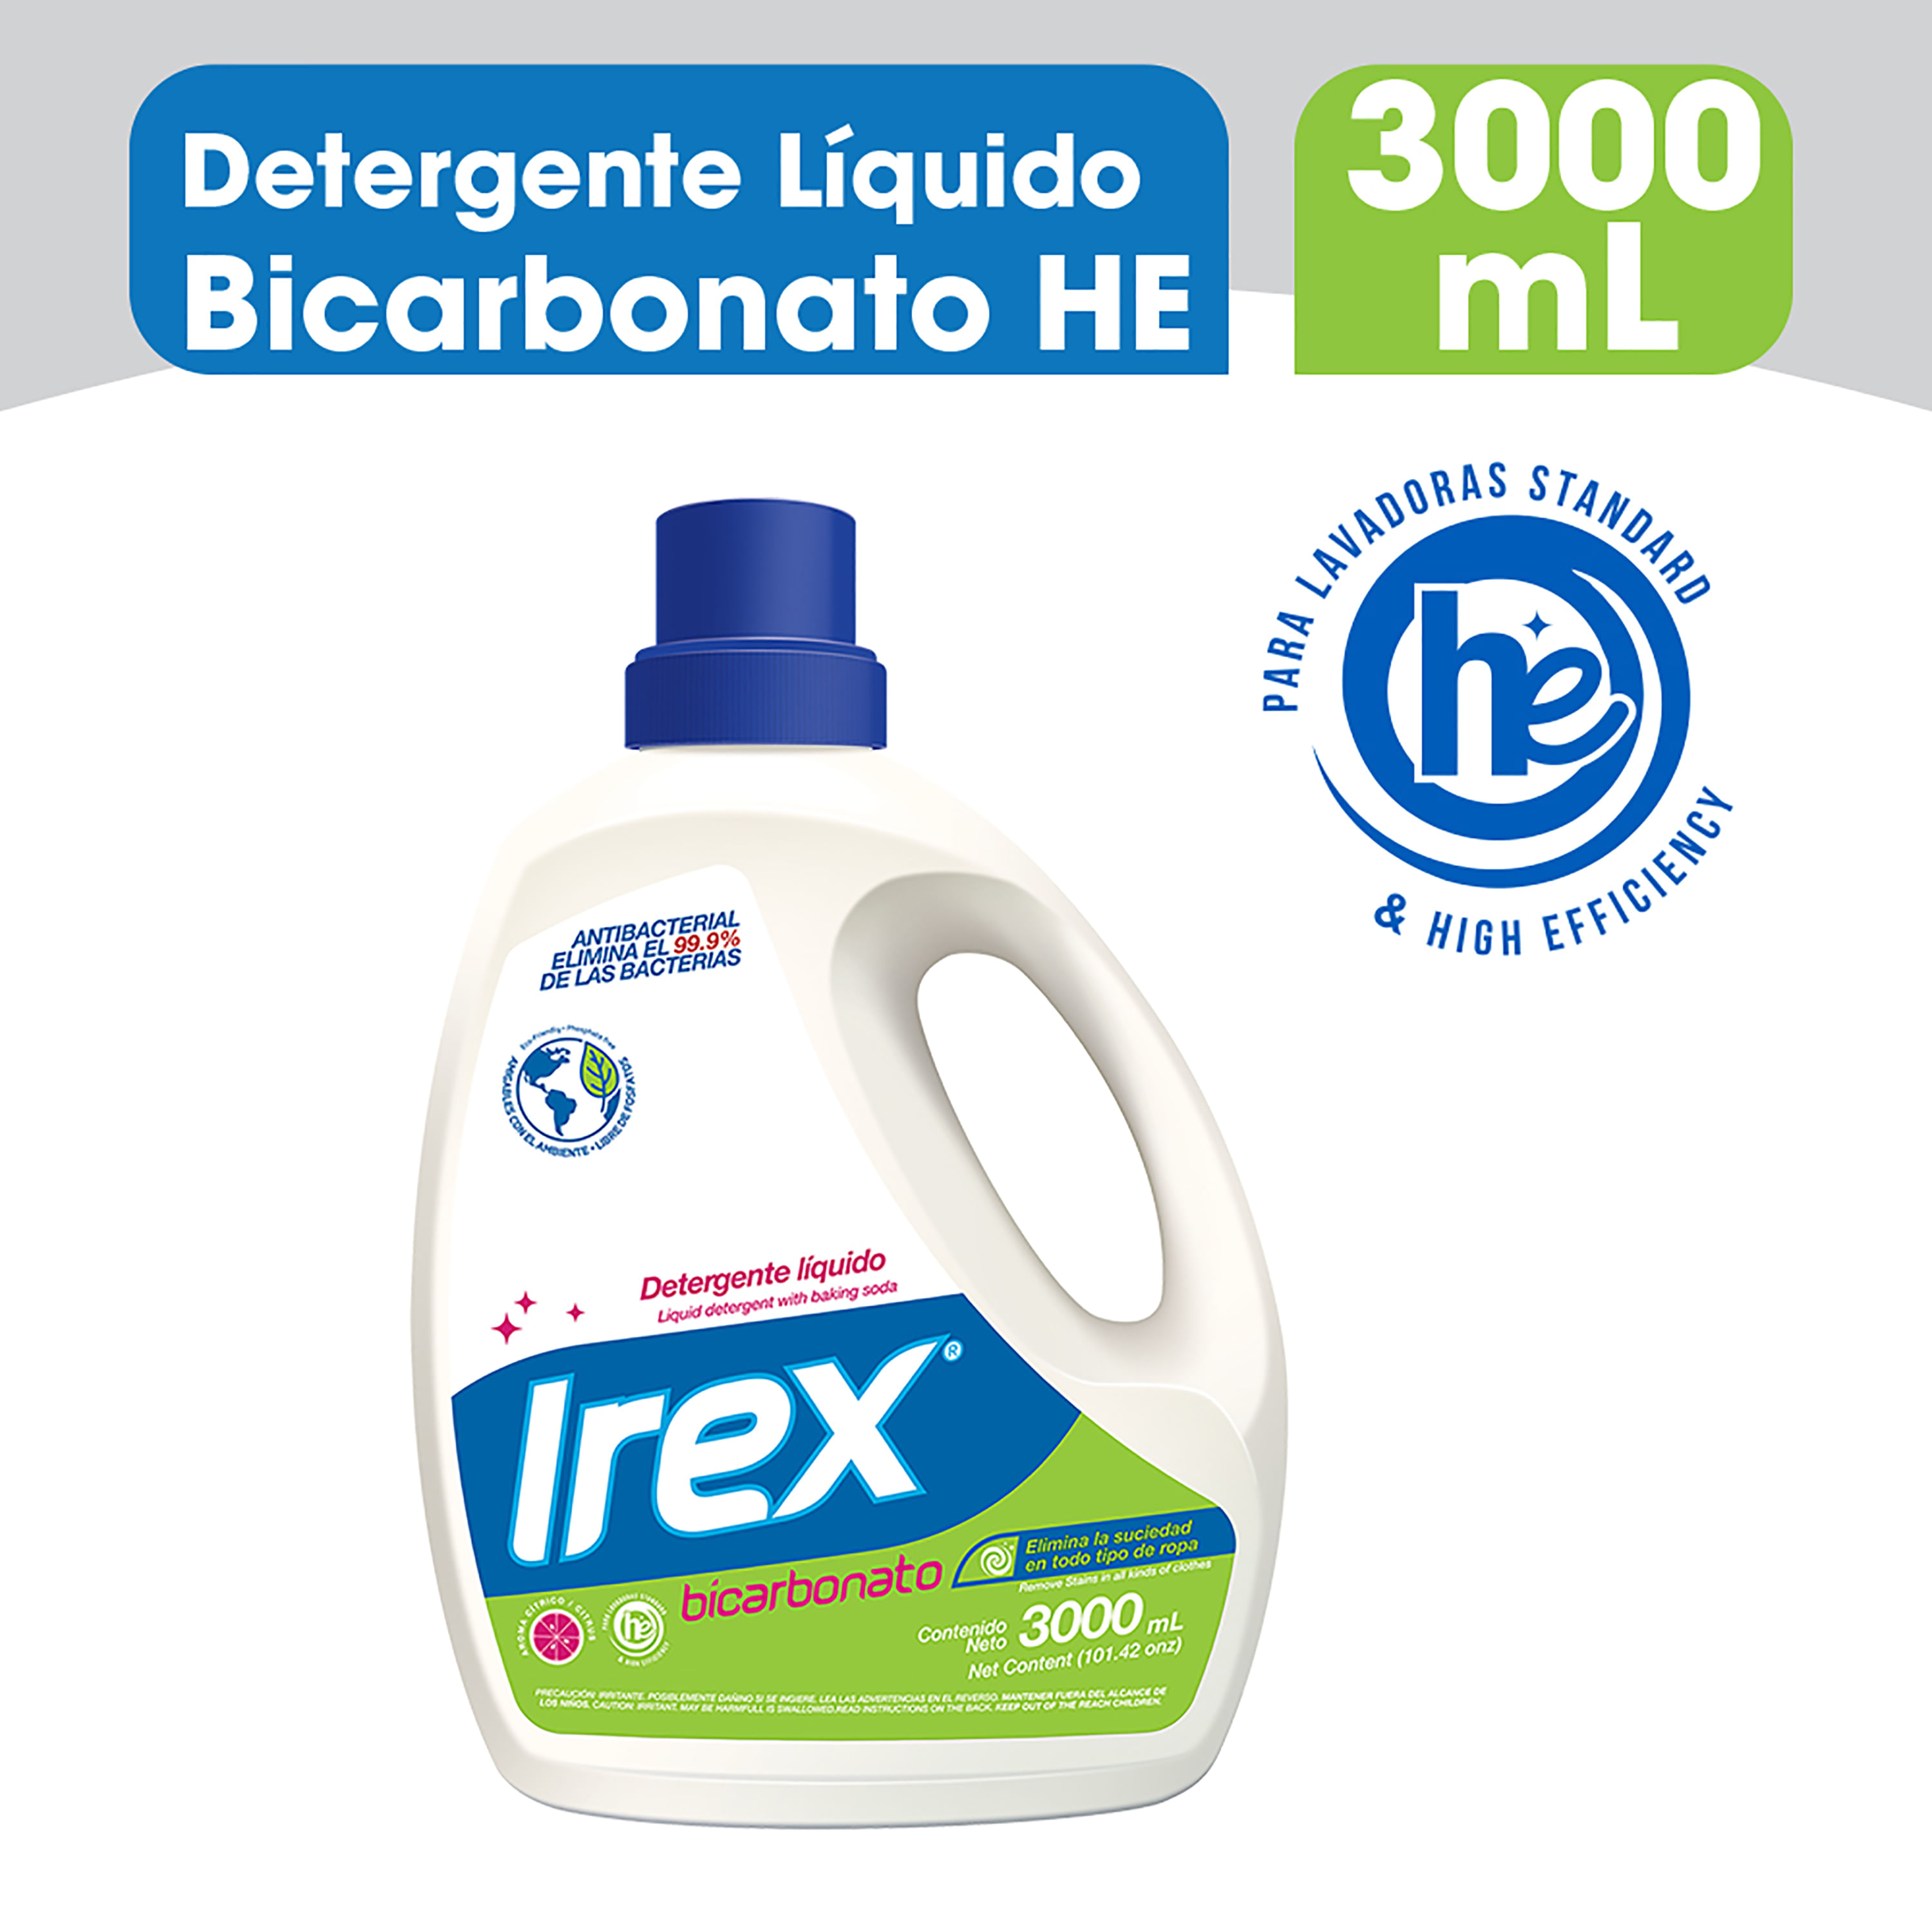 Detergente-Irex-L-quido-Bicarbonato-He-3000ml-1-70727